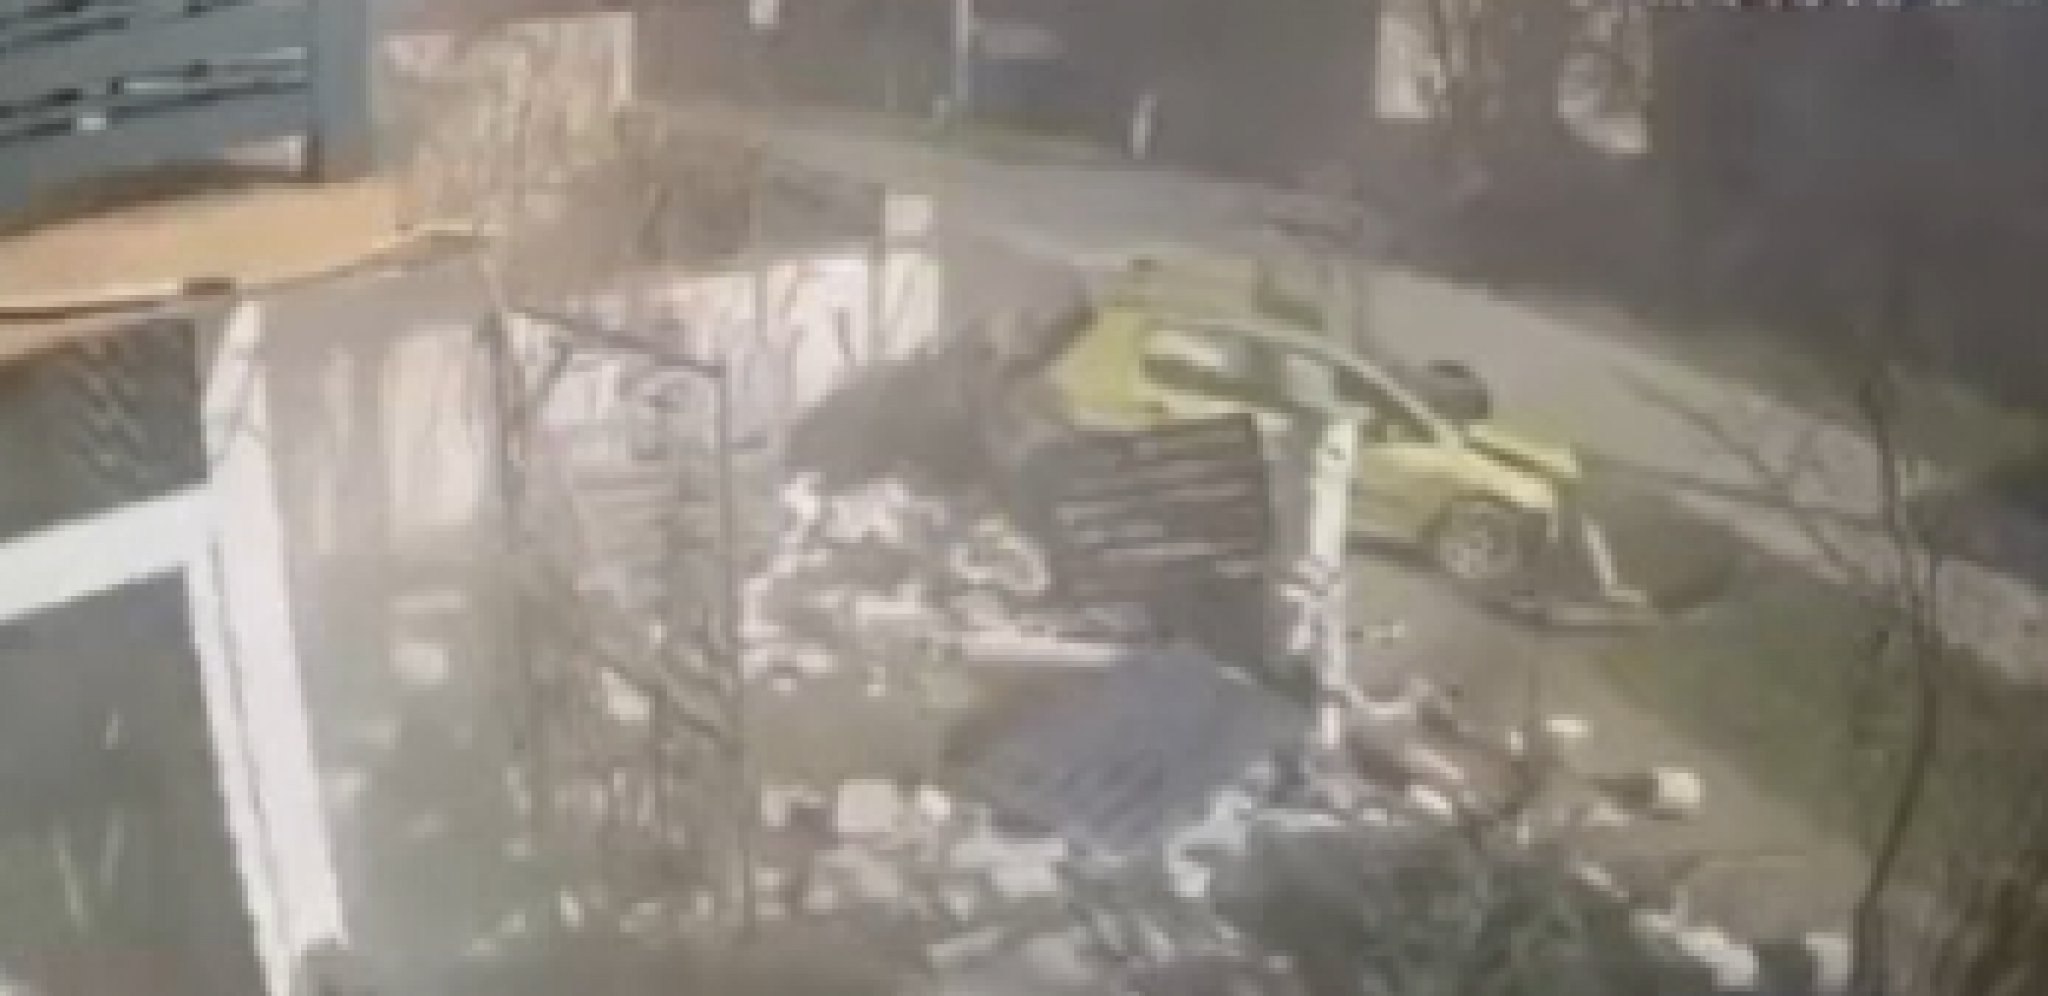 VIŠE SREĆE NEGO PAMETI! Snimak nezgode u Bačkom Petrovcu - Udario autom u ogradu, uleteo u dvorište, pa pobegao sa lica mesta (VIDEO)